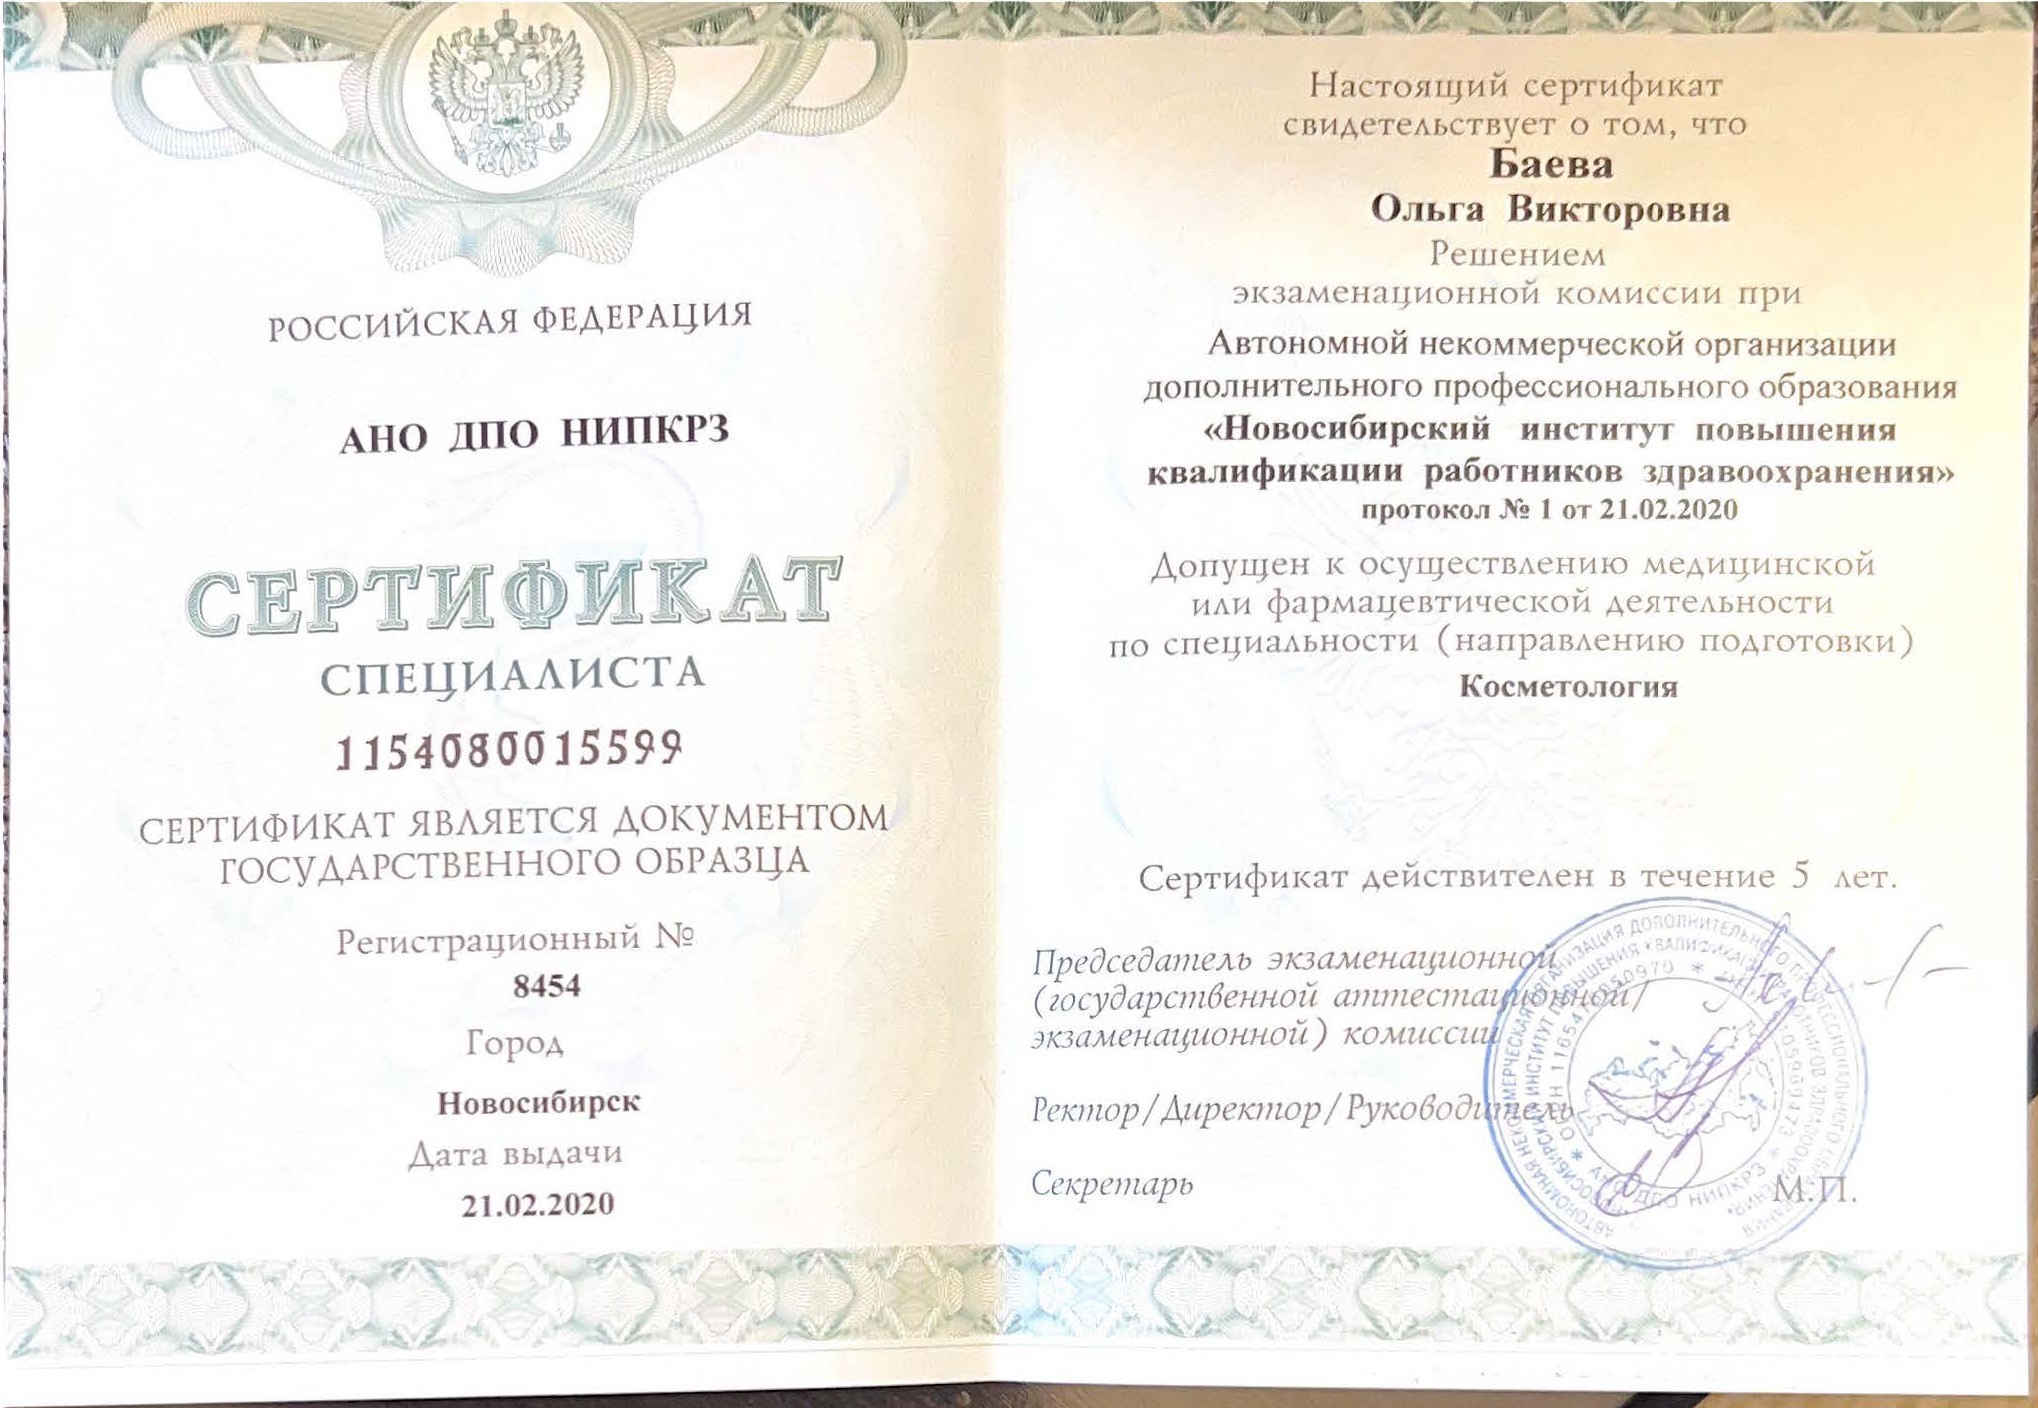 Сертификат специалиста "Косметология". 2020 г.